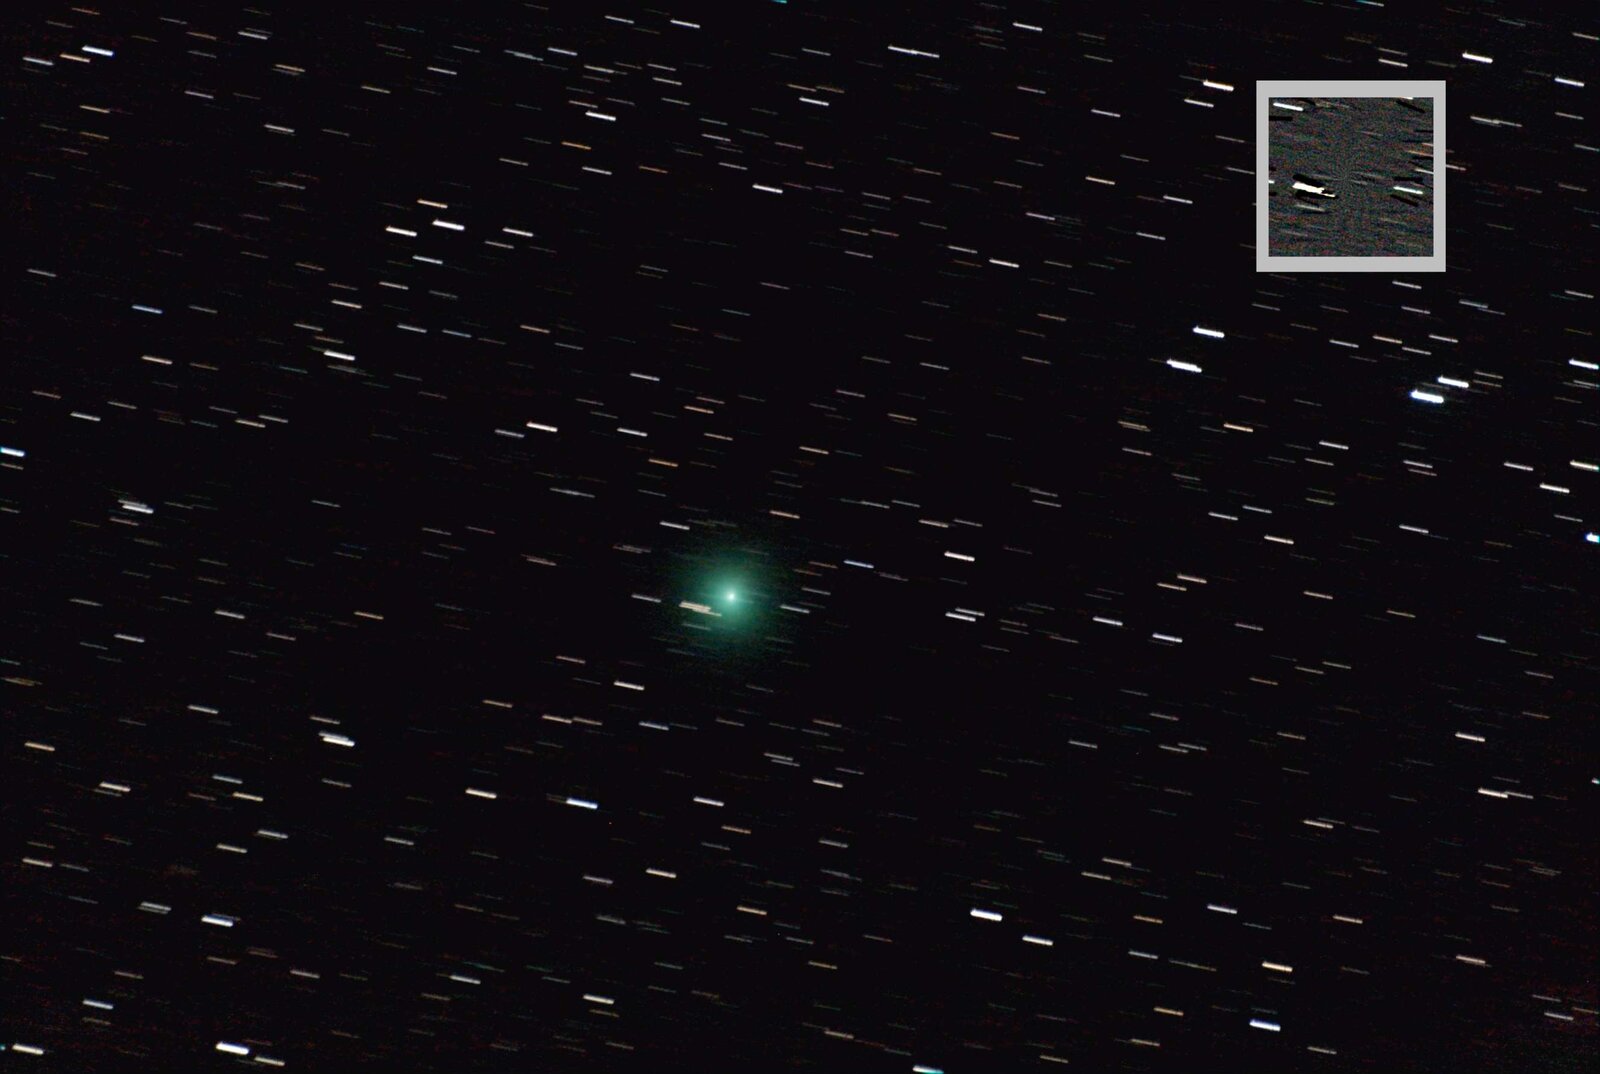 Κομήτης 8P/Tuttle